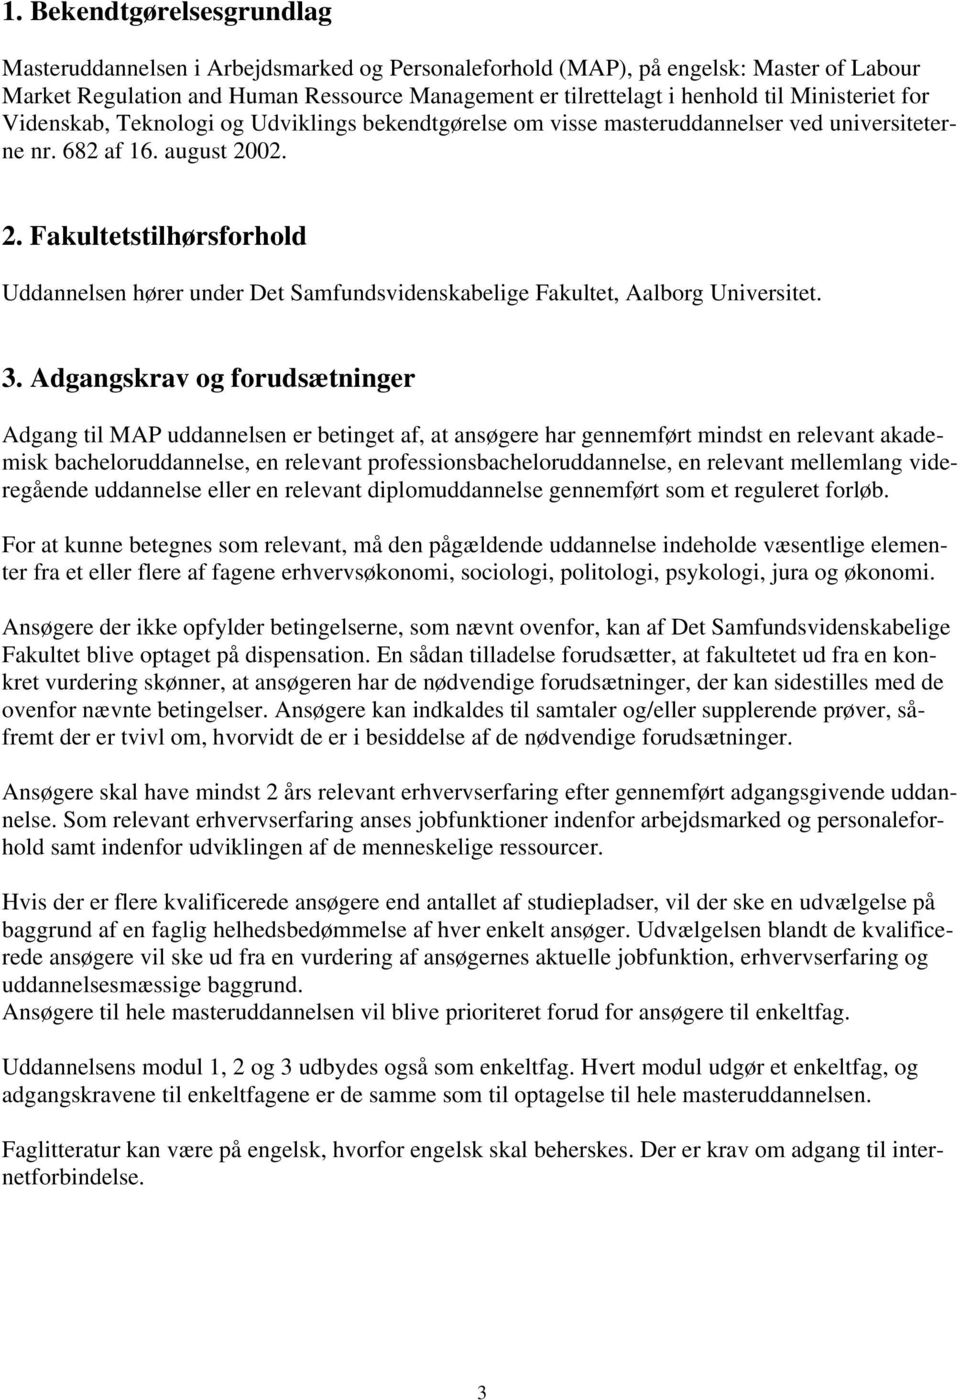 02. 2. Fakultetstilhørsforhold Uddannelsen hører under Det Samfundsvidenskabelige Fakultet, Aalborg Universitet. 3.